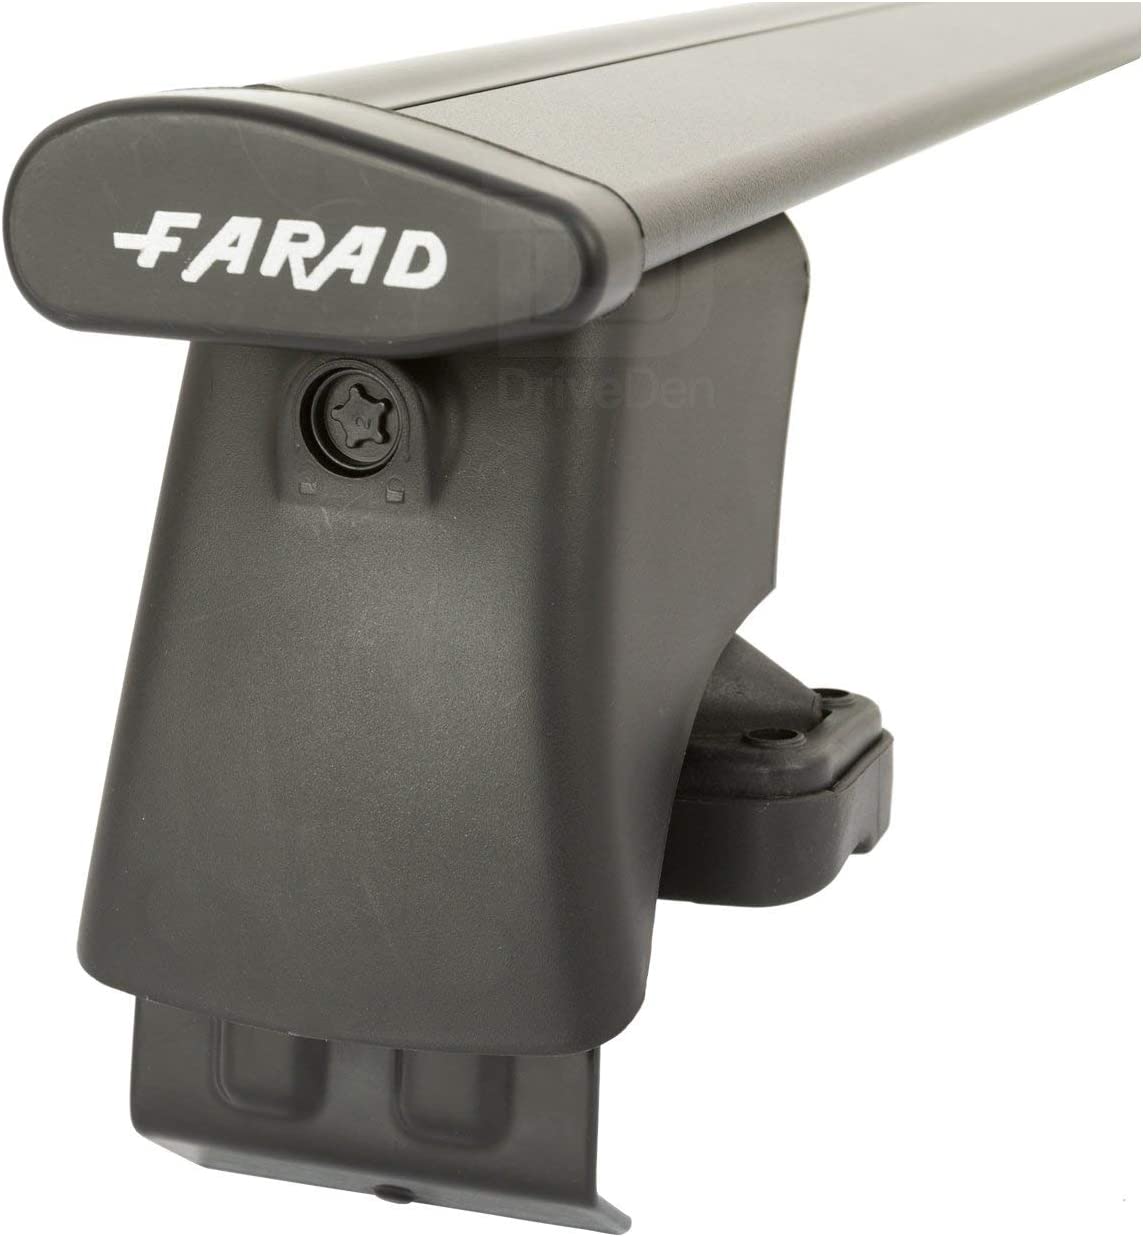 FARAD-Kit H2 per barre portatutto - Lancia Delta 2008-2014 (senza corrimano)